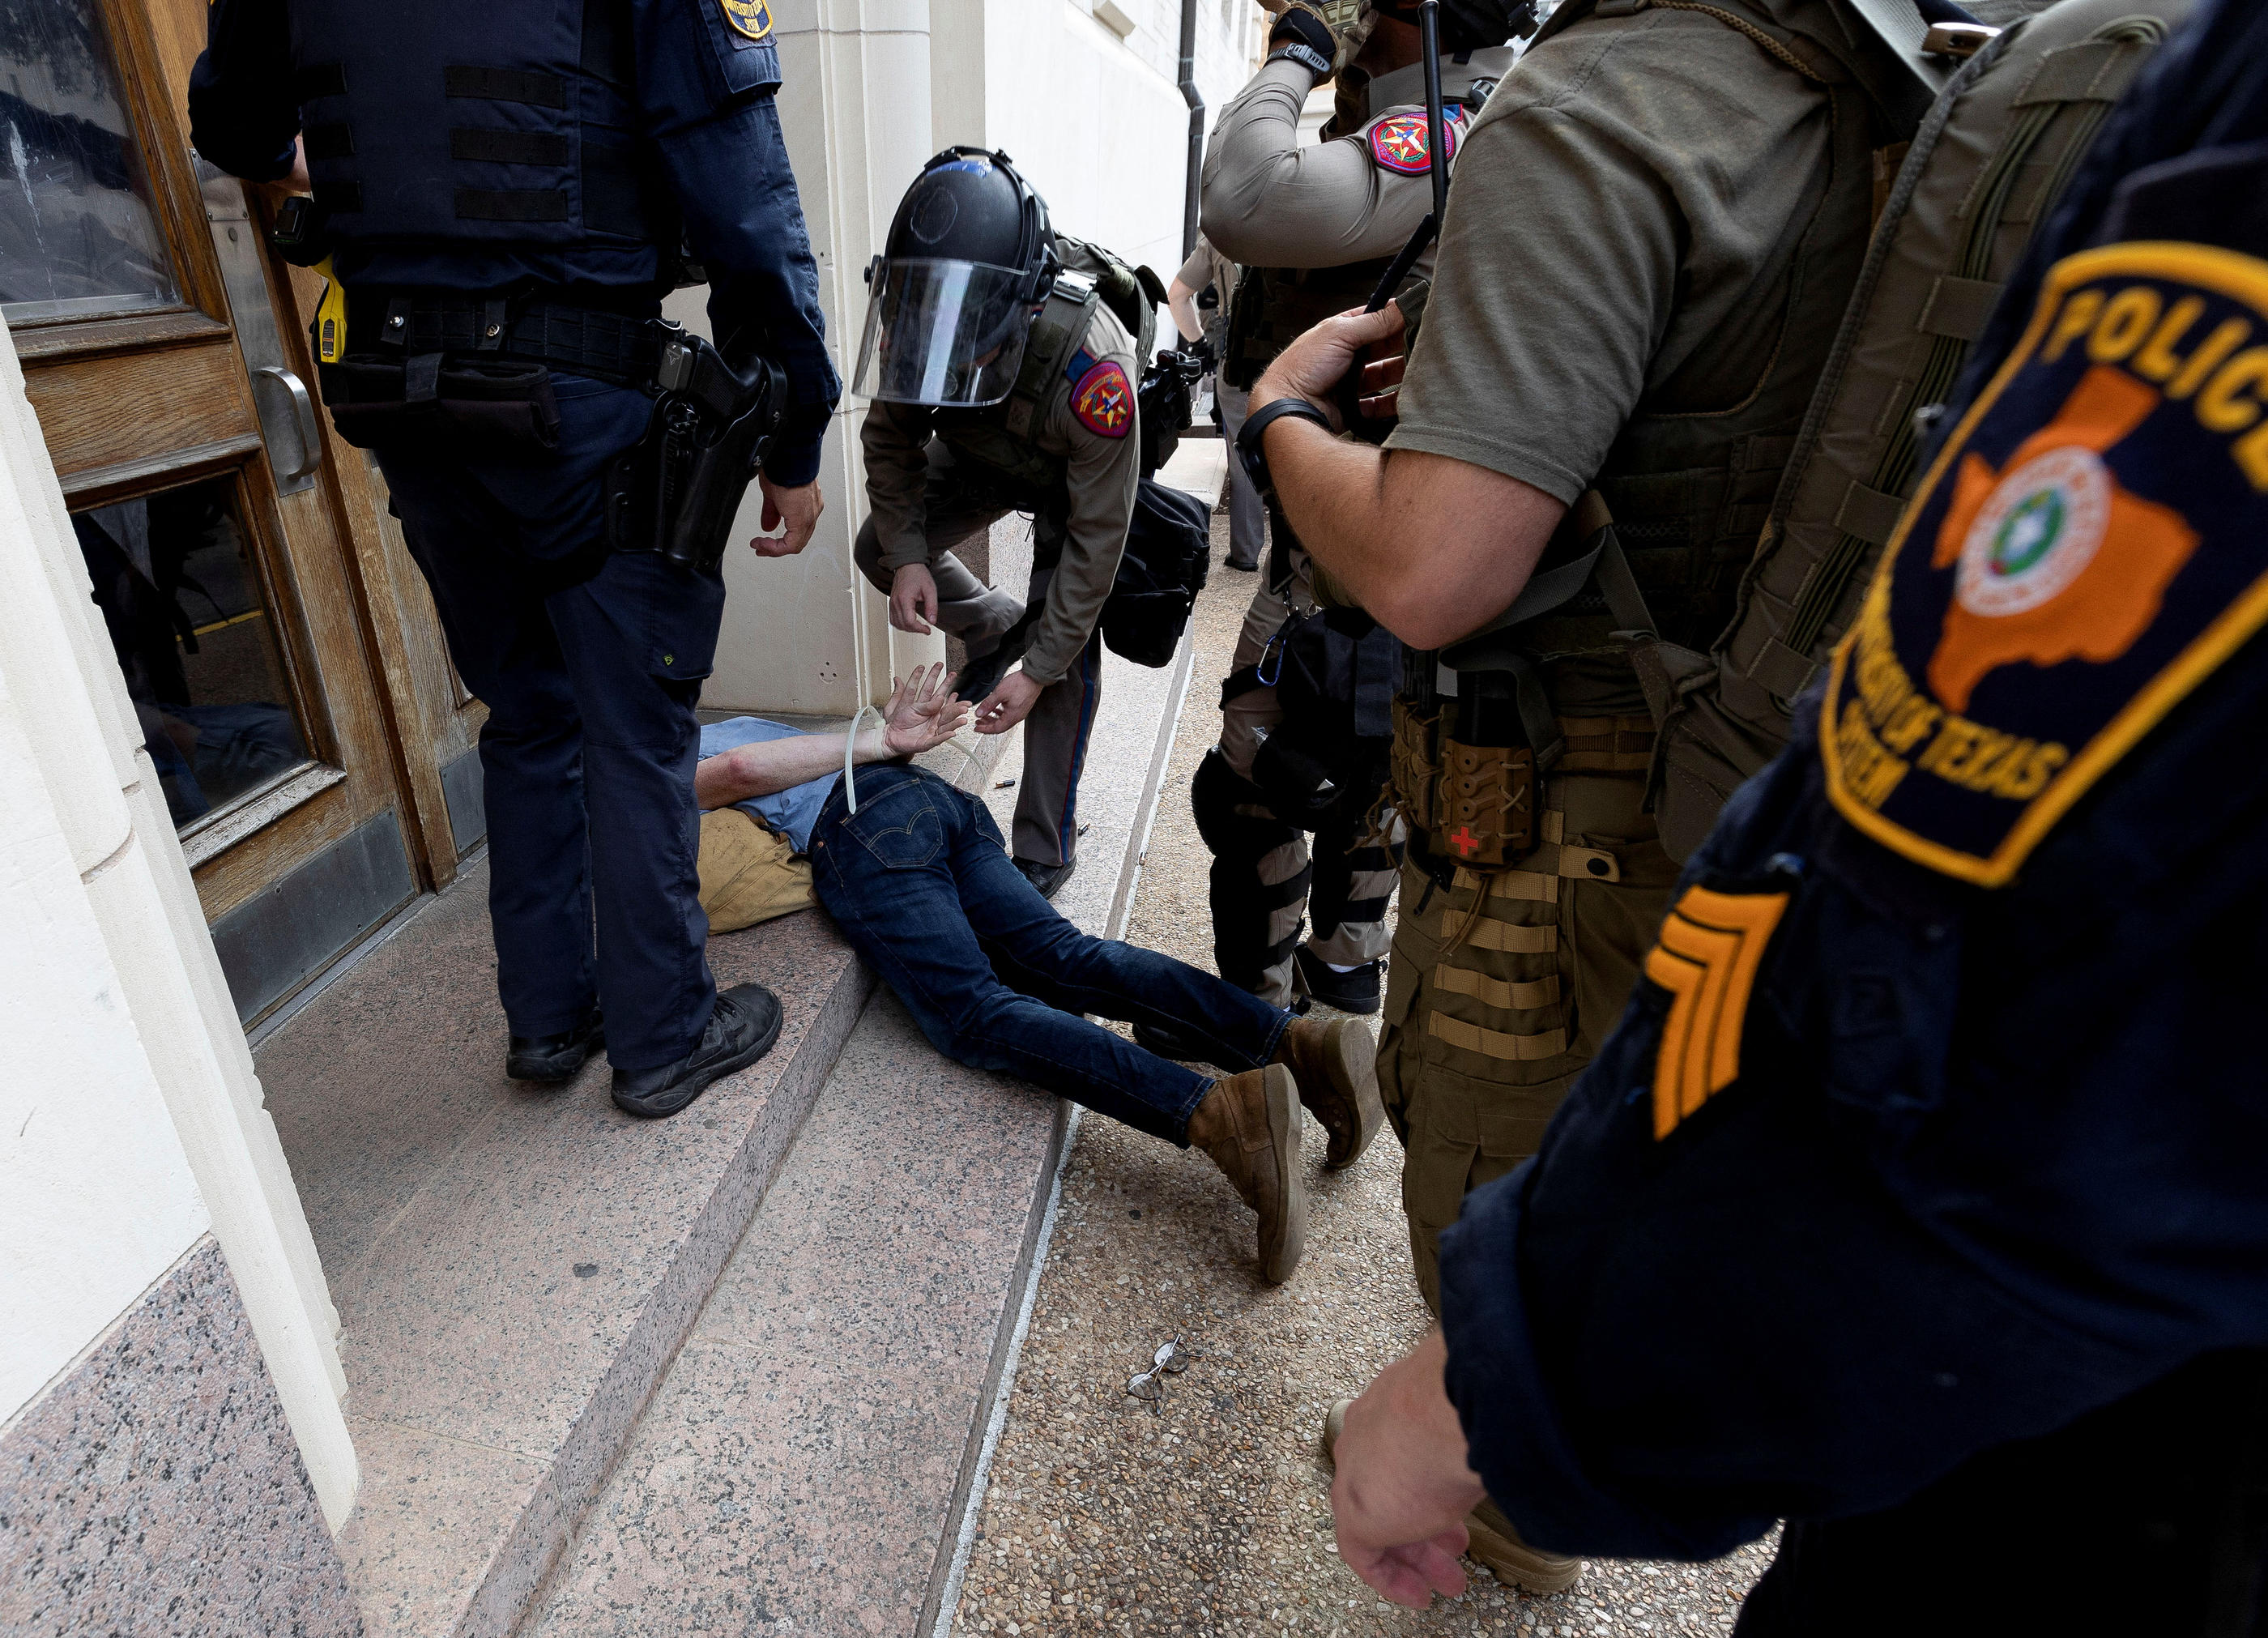 A Austin (Texas), des affrontements ont eu lieu entre manifestants et forces de l'ordre, qui ont interpellé 34 personnes. REUTERS/Nuri Vallbona